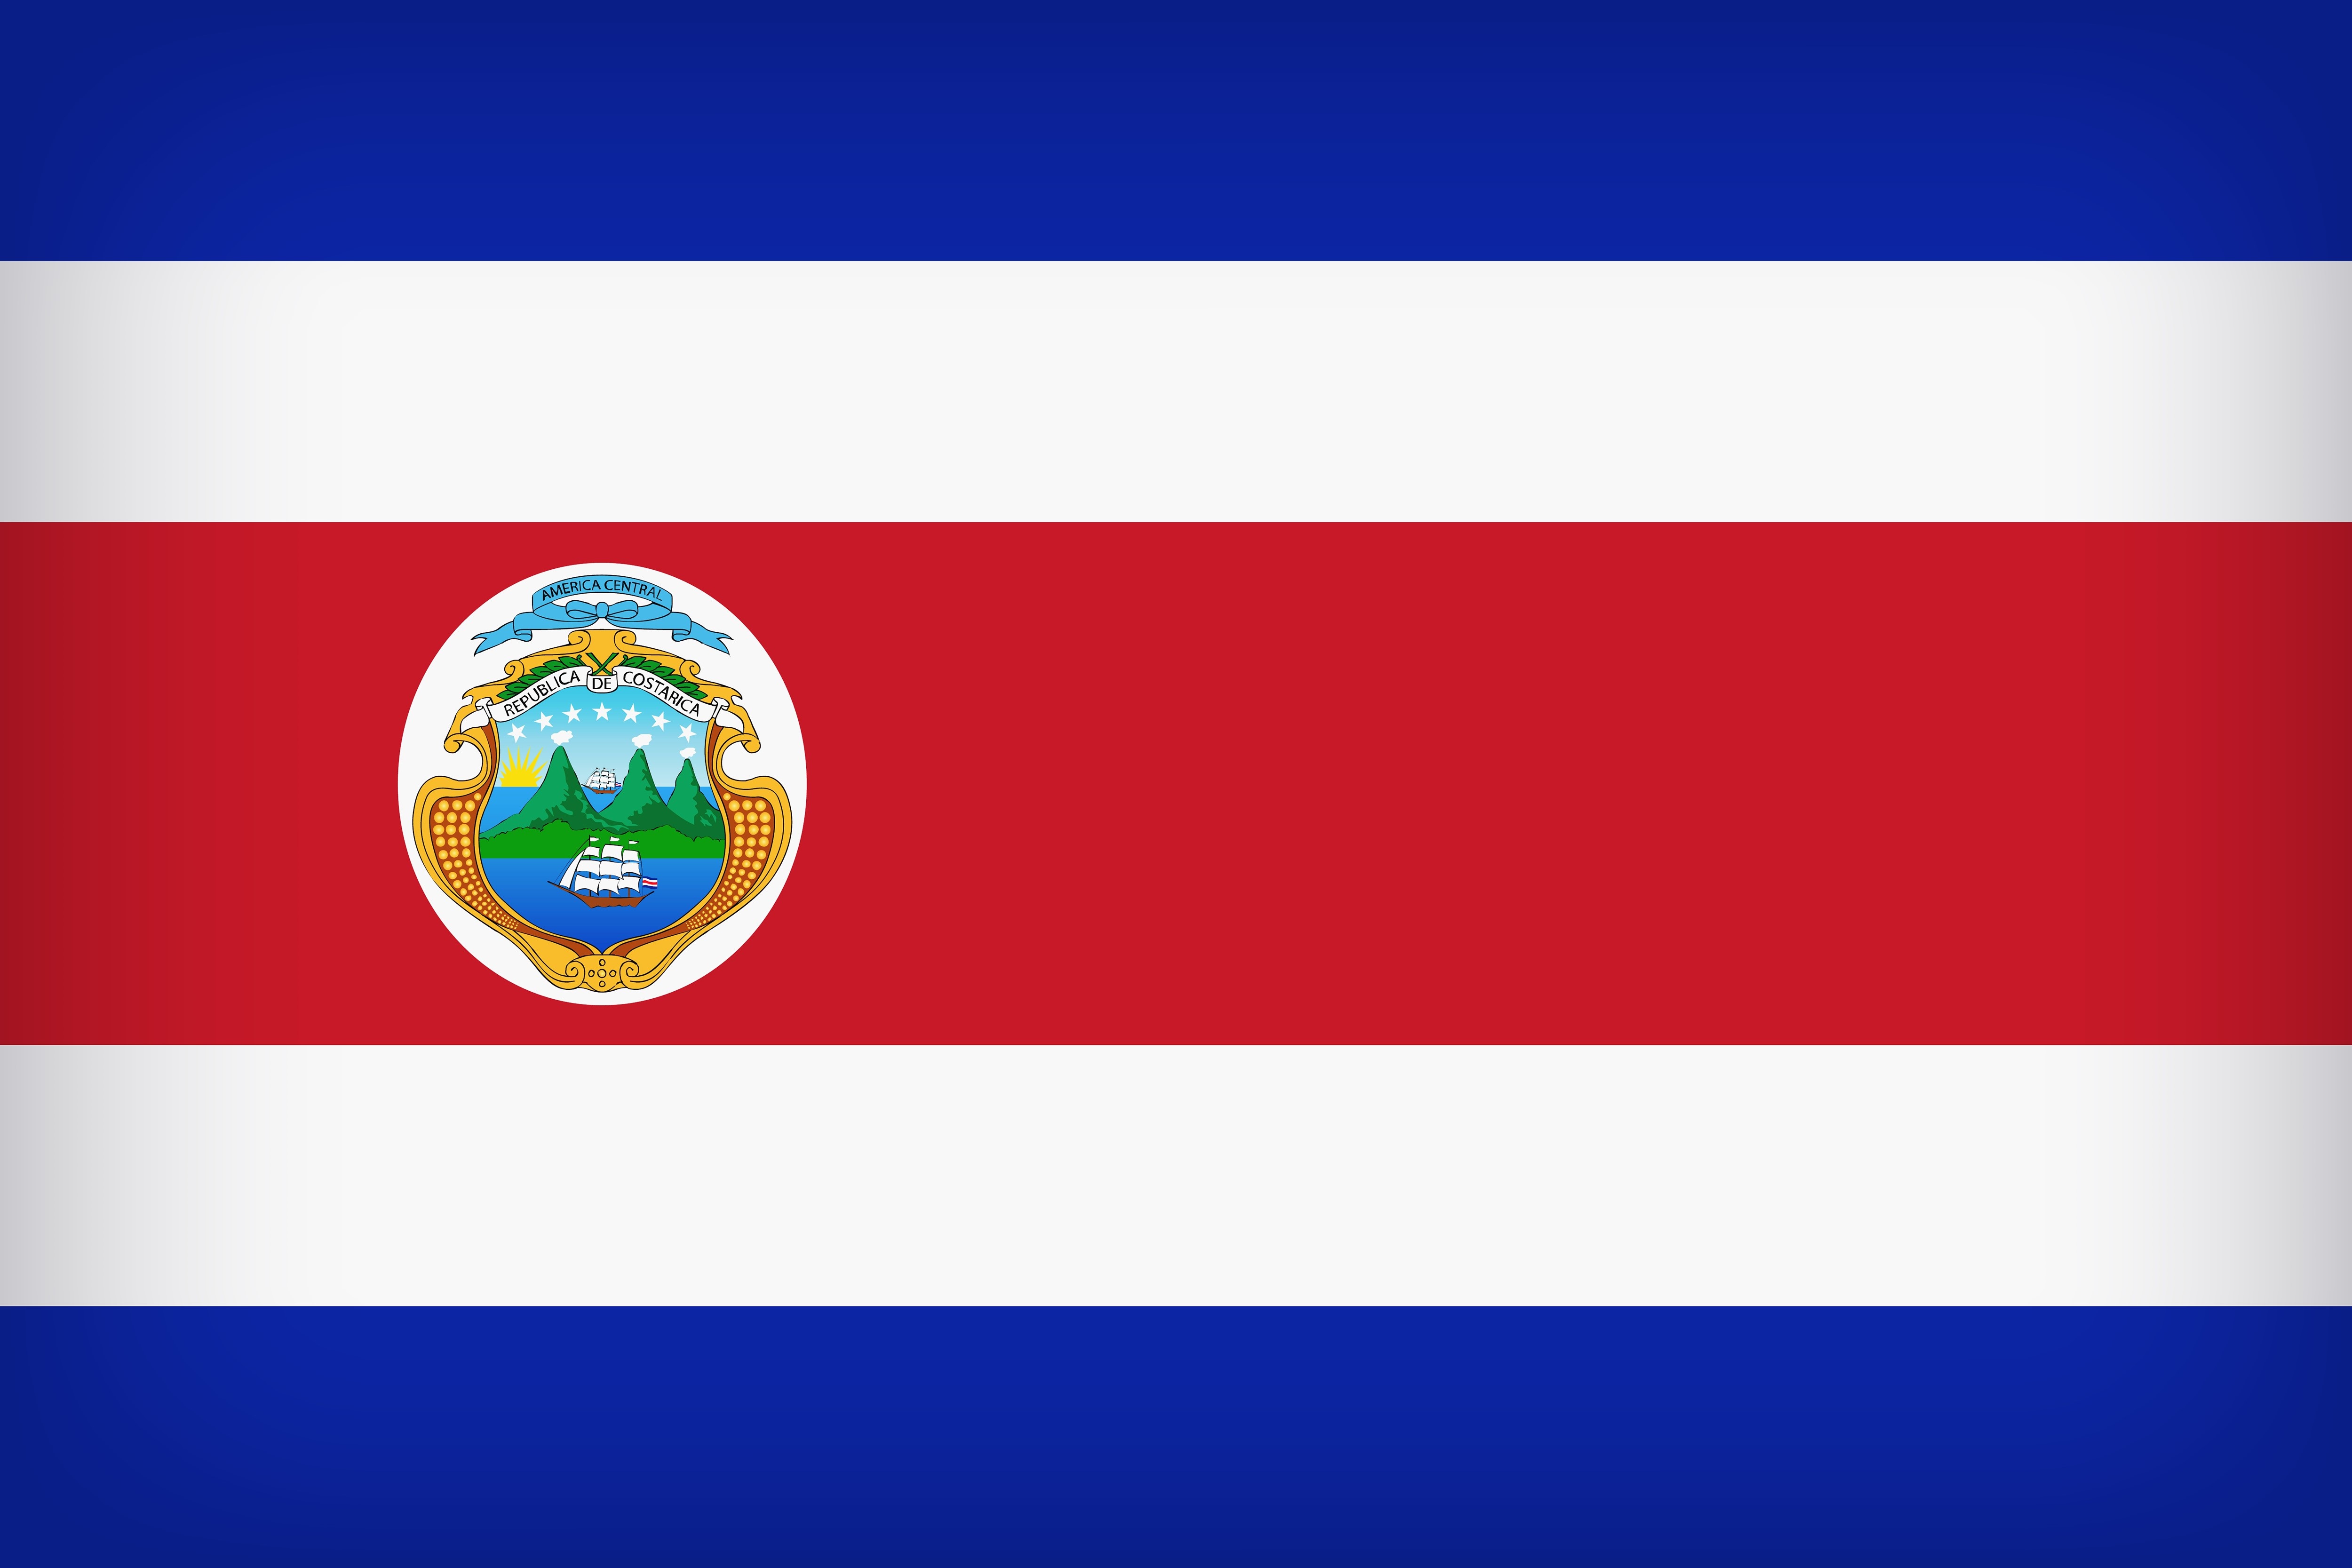 Descarga gratuita de fondo de pantalla para móvil de Banderas, Bandera, Miscelaneo, Bandera De Costa Rica.